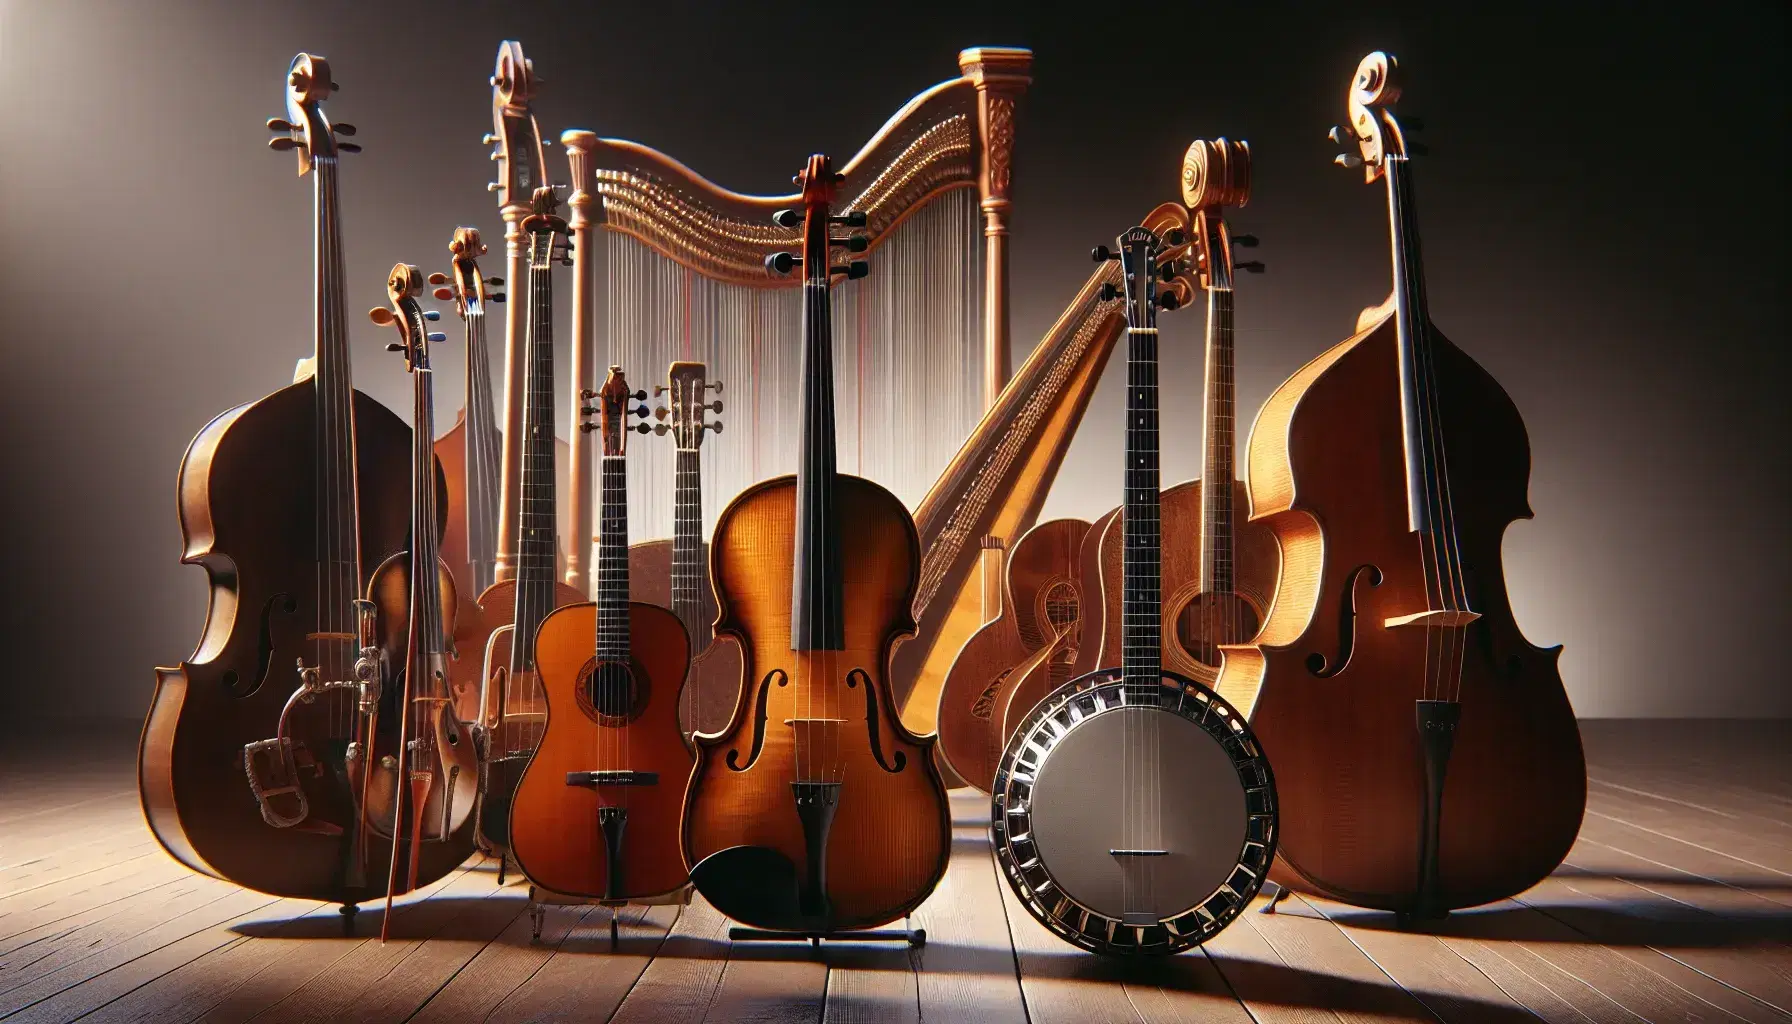 Violino con archetto, chitarra classica, banjo, contrabbasso e arpa disposti su sfondo scuro, pronti per un concerto.